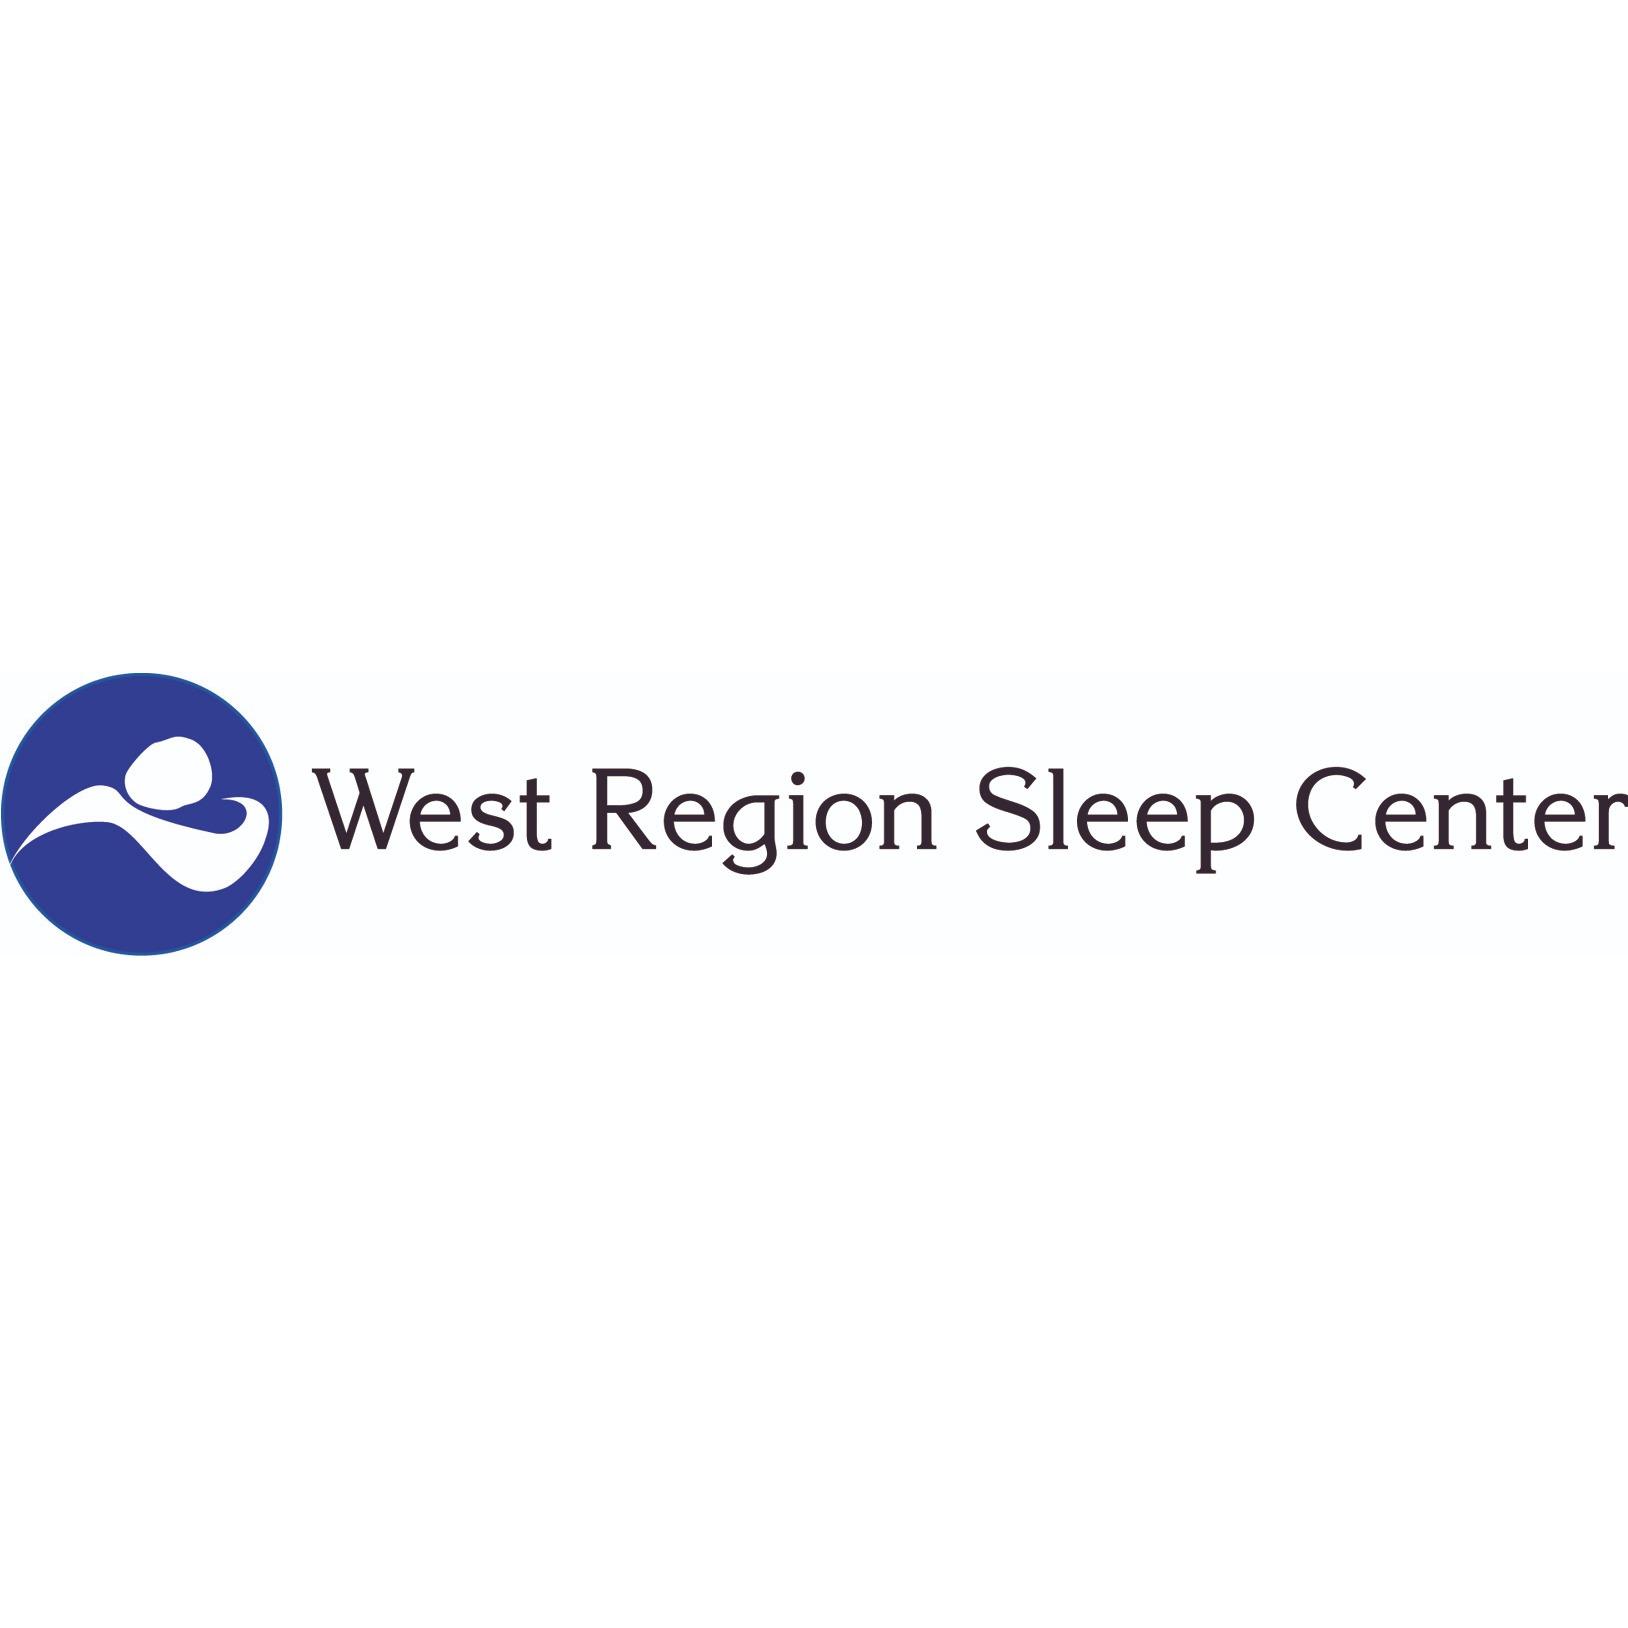 West Region Sleep Center